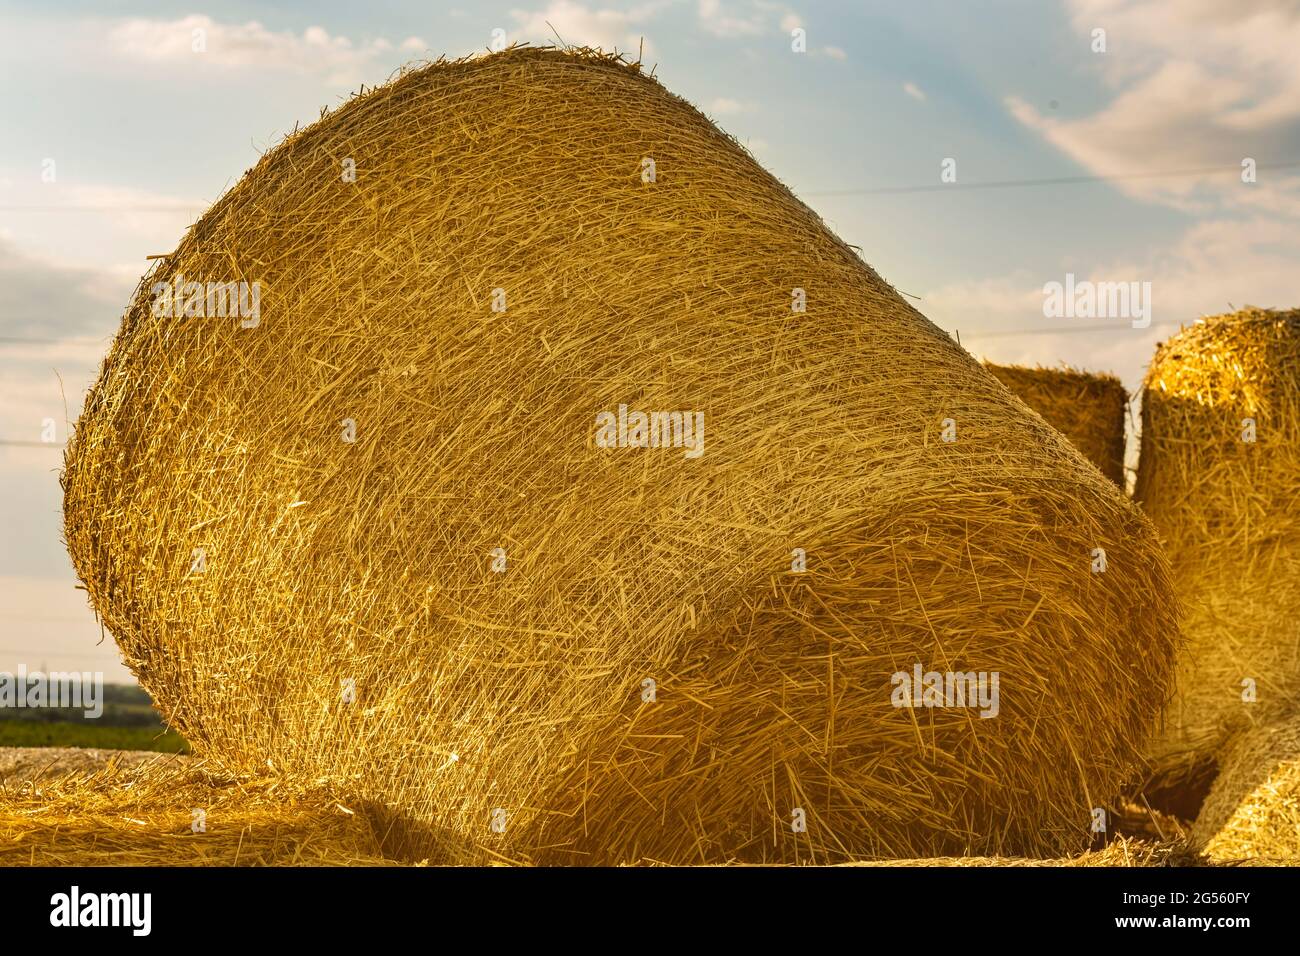 Une botte de foin ronde repose sur d'autres balles après la récolte de blé.  Rouleaux de paille dorée sur un champ de blé au coucher du soleil en  italien. Emballage et stockage